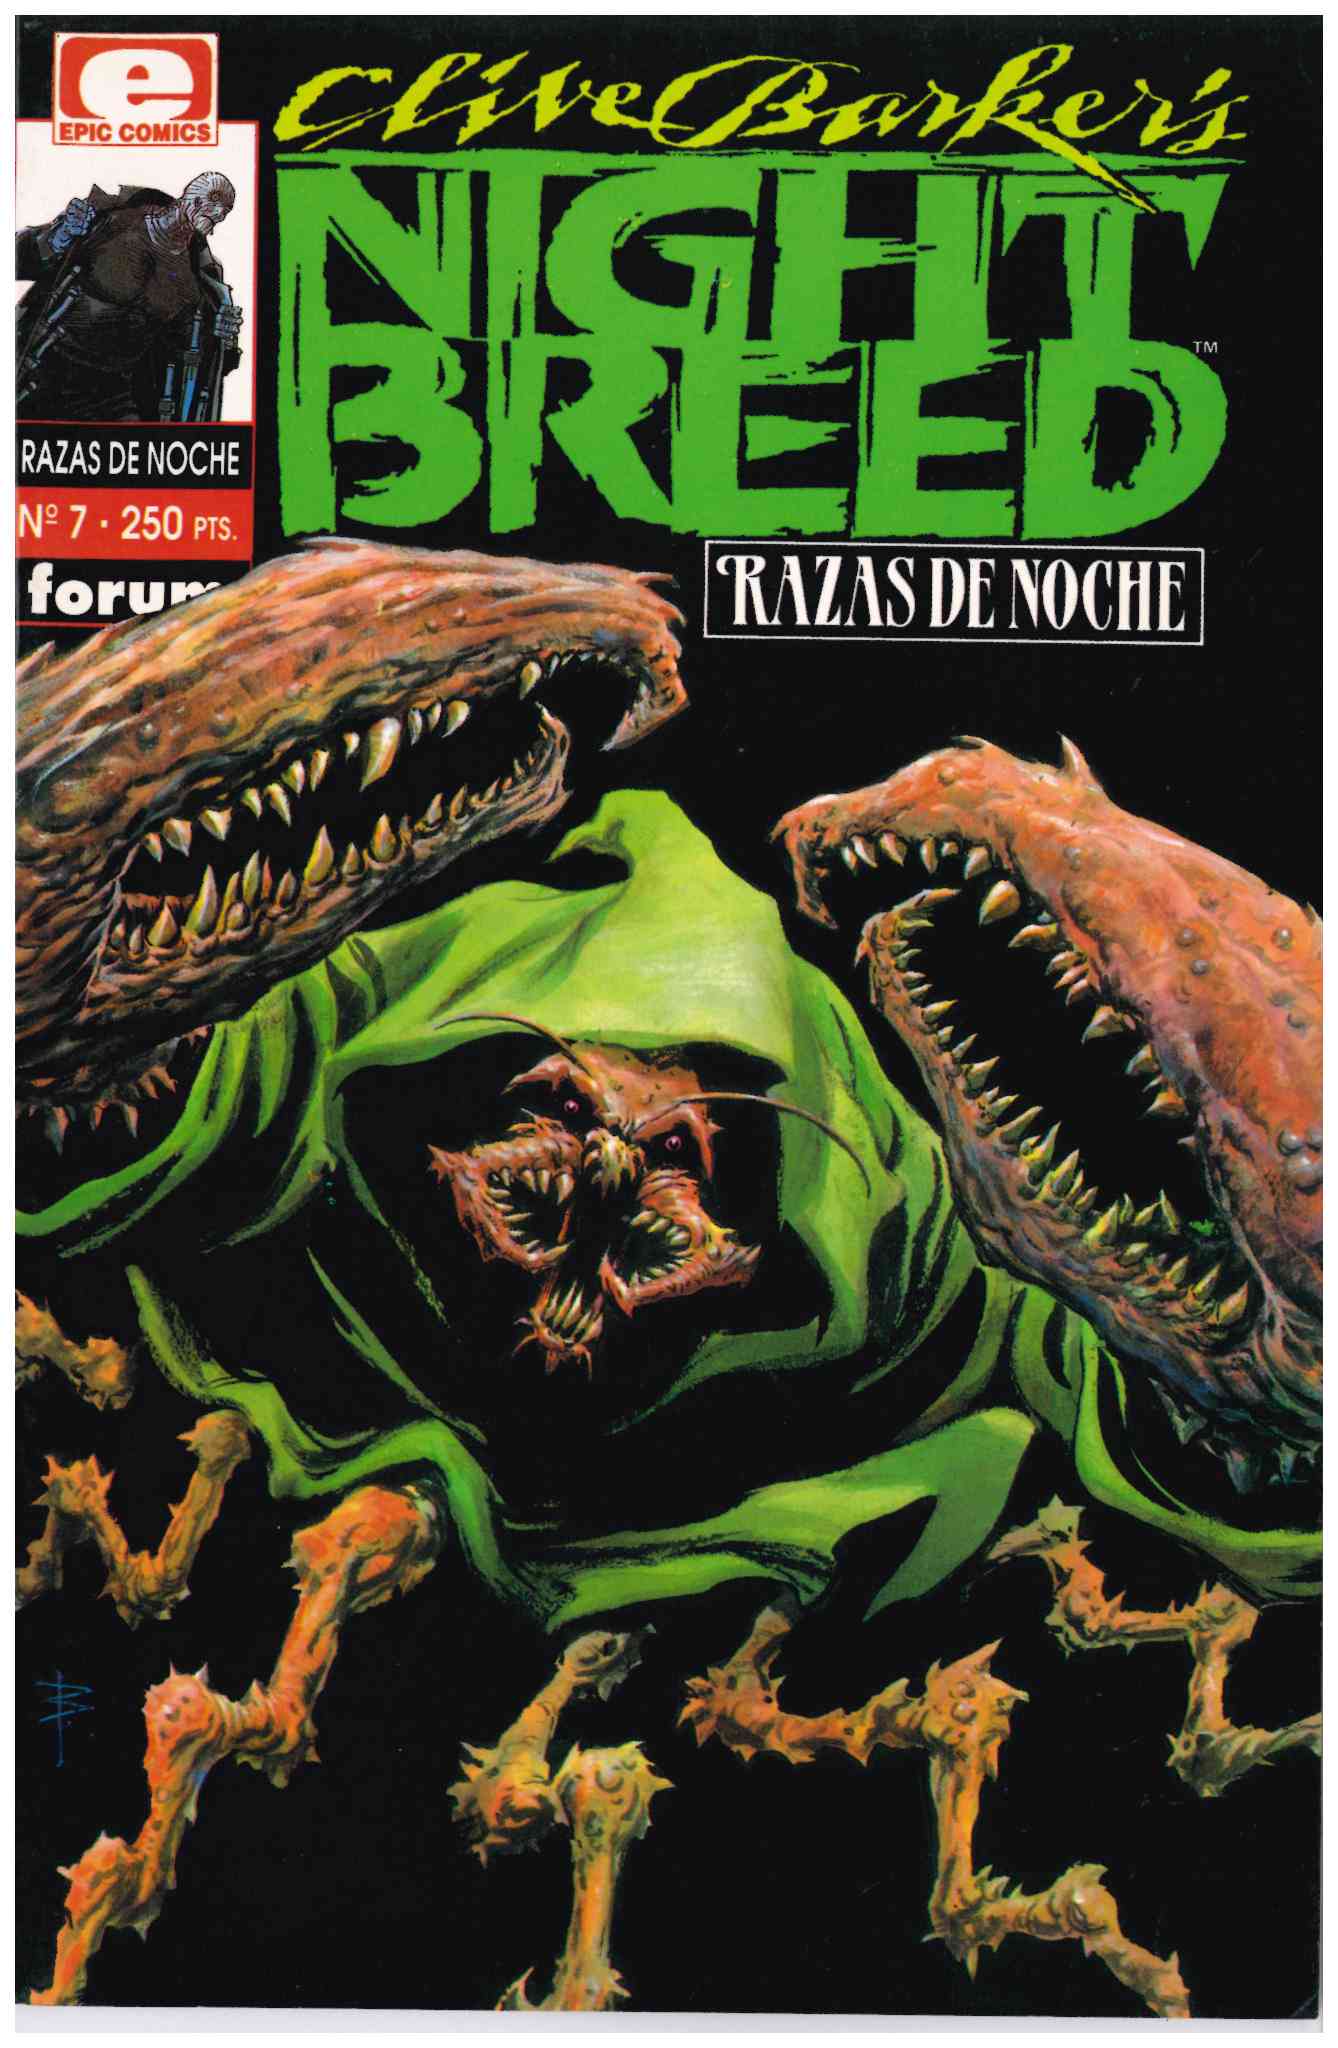 Night Breed (Razas de Noche). Forum 1992. Nº 7